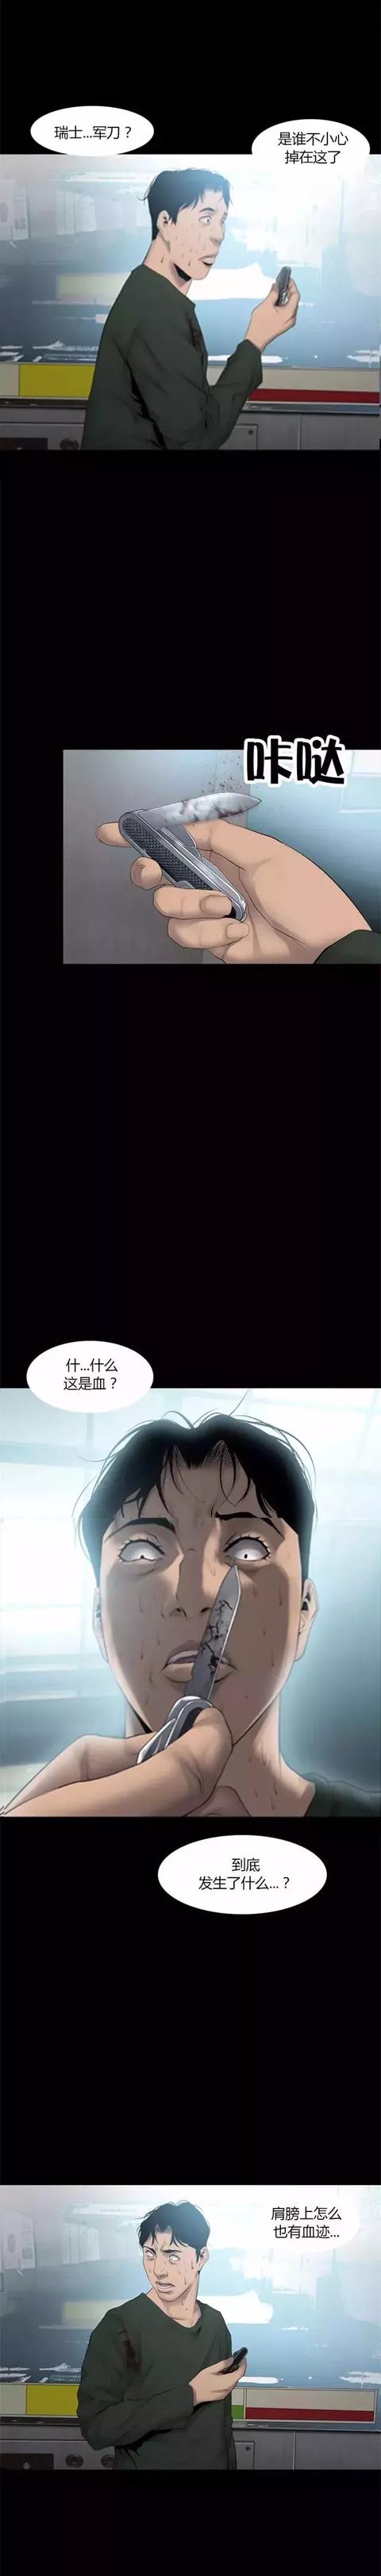 韩国午夜漫画《电梯惊魂》，真是令人作呕的死法